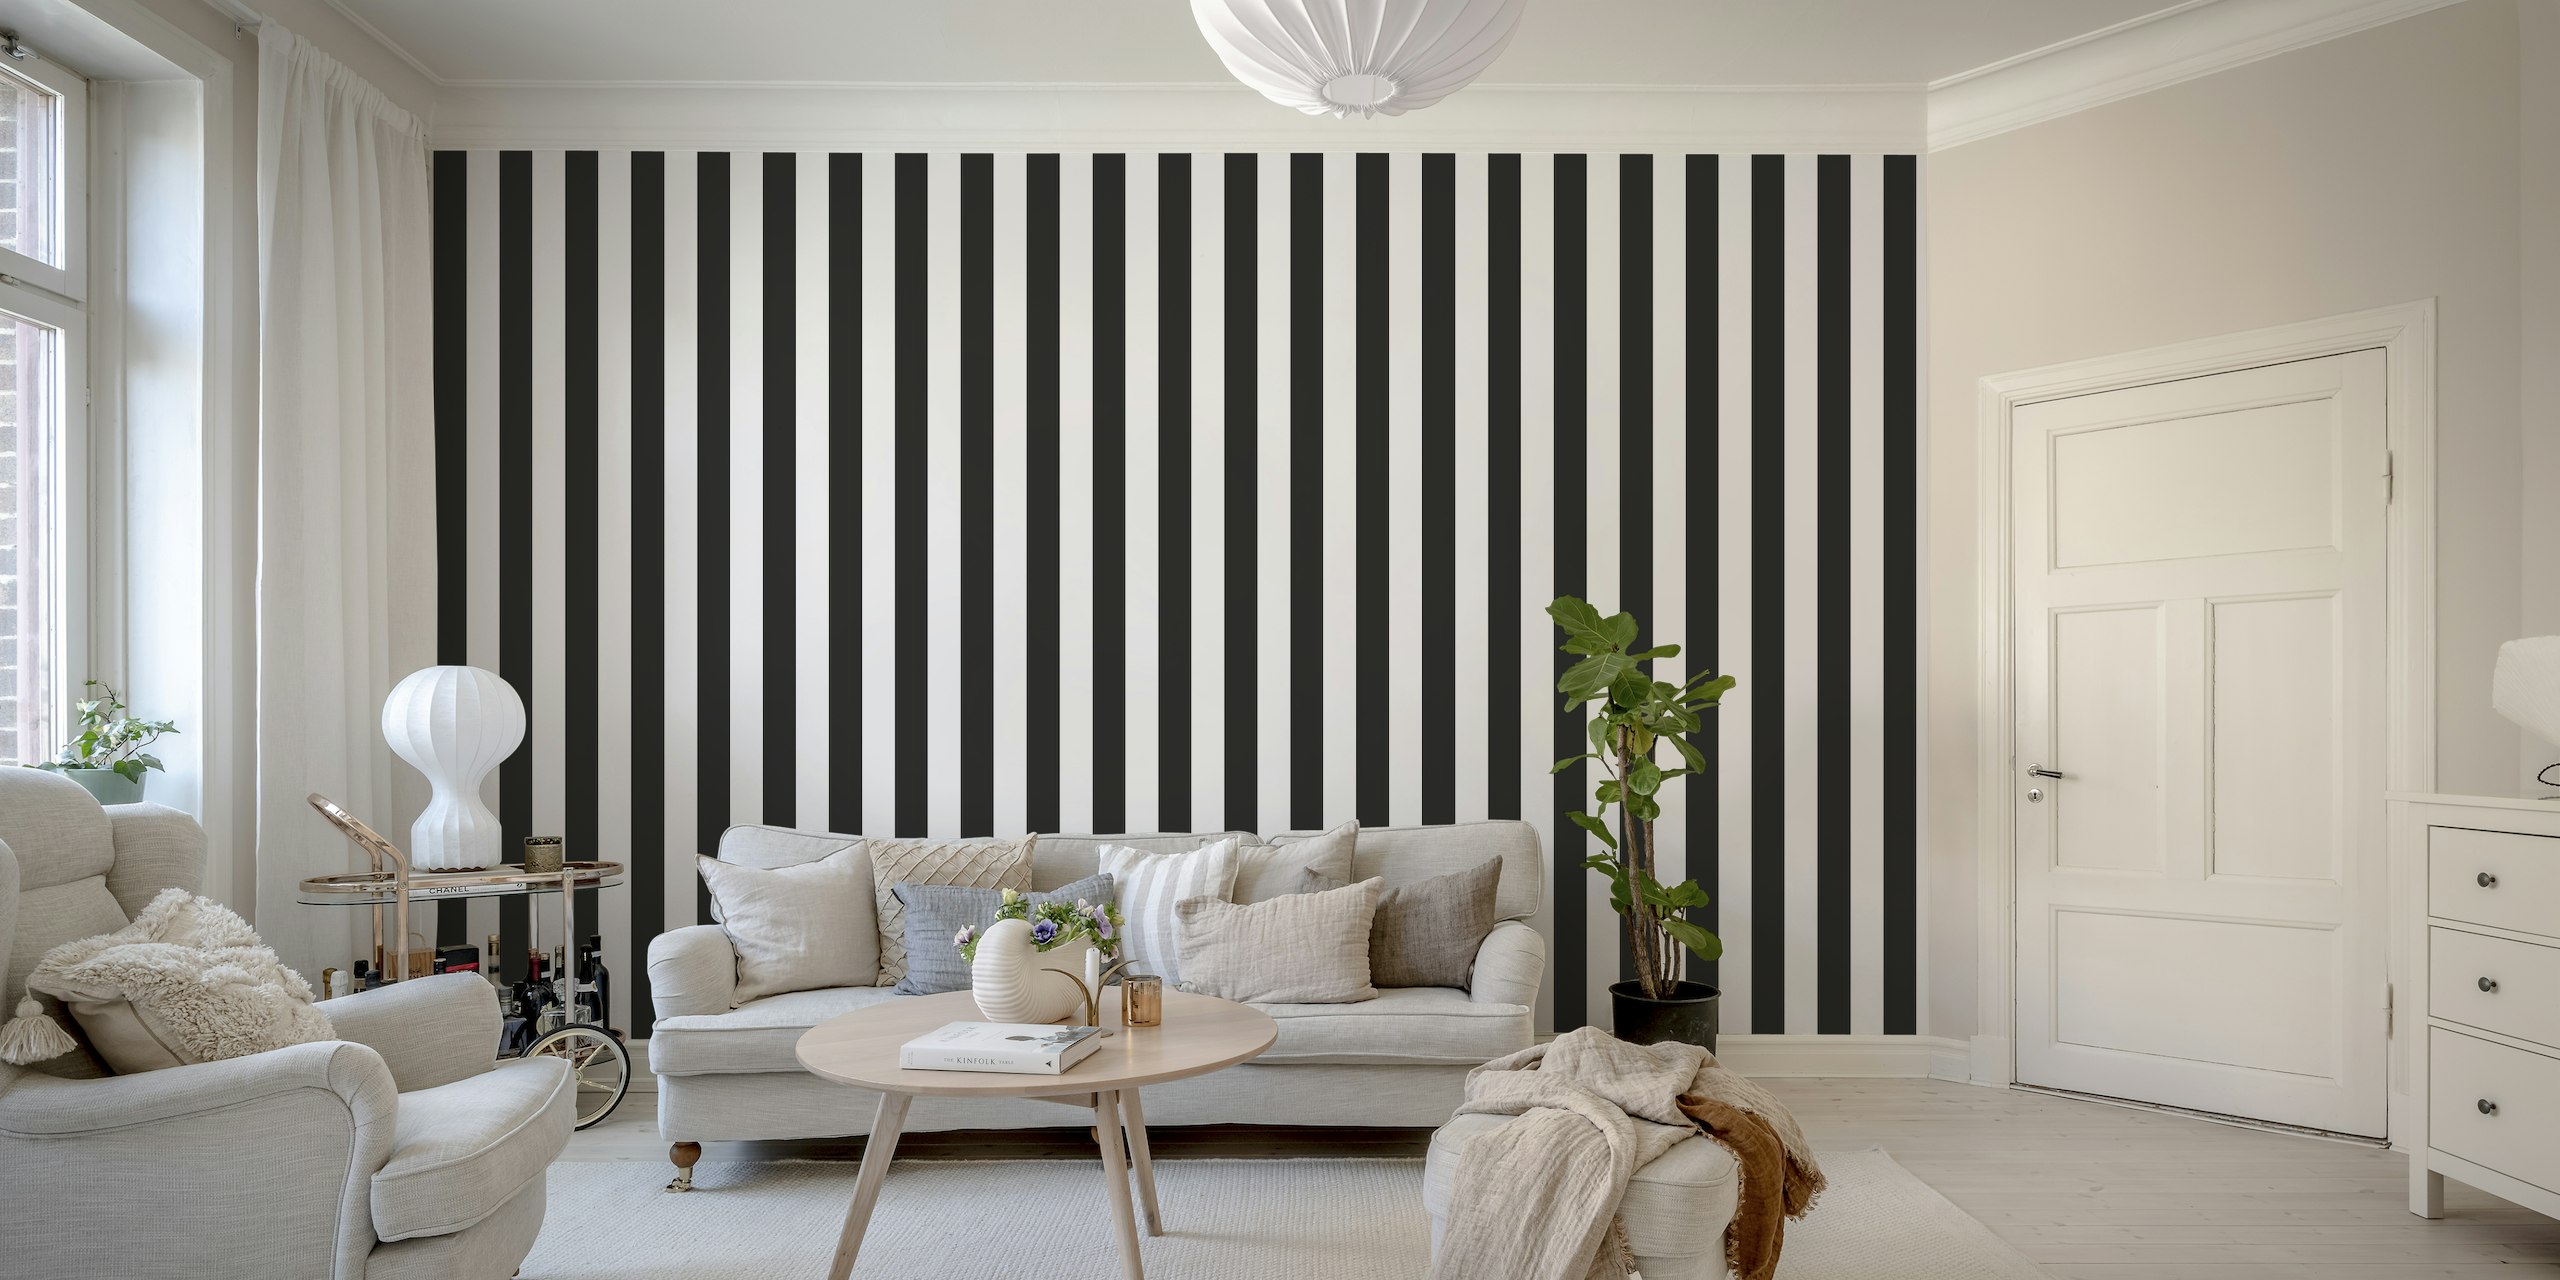 Black and white stripe pattern ταπετσαρία